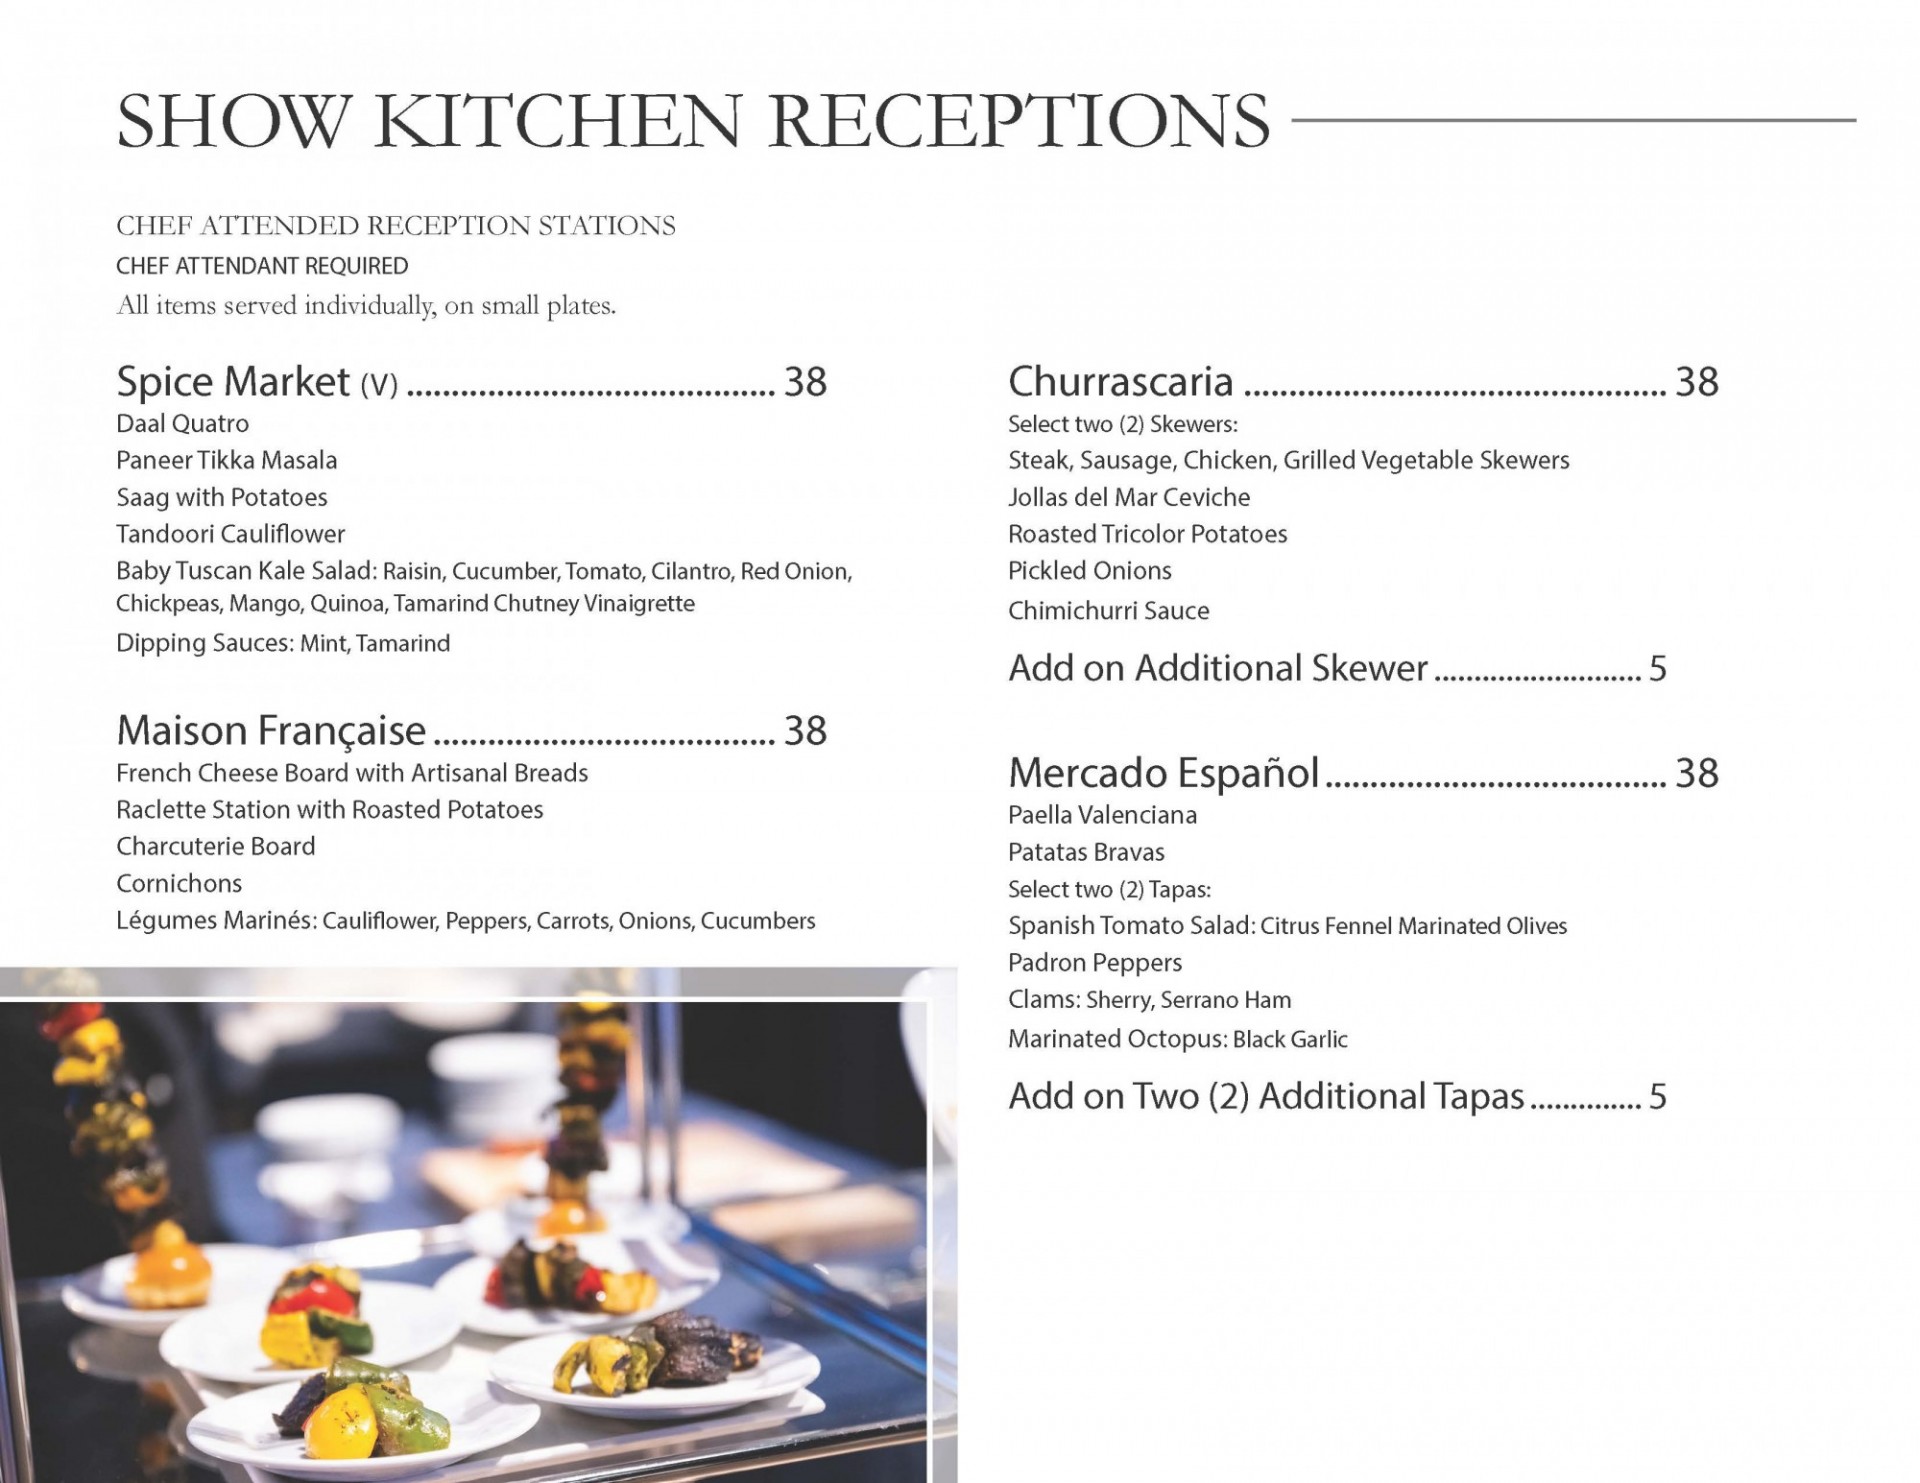 Show kitchen menus